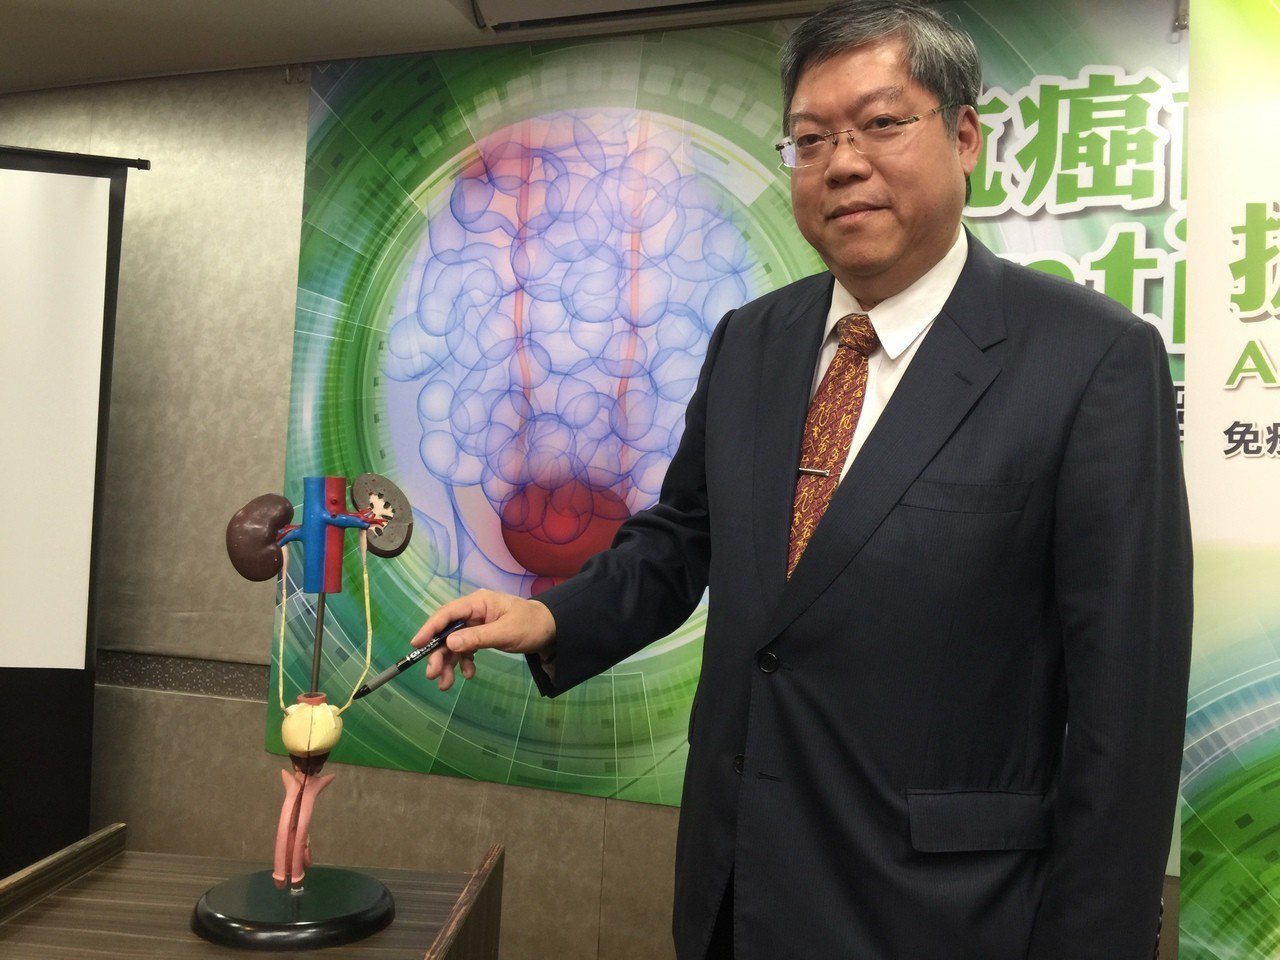 台灣泌尿腫瘤醫學會理事長江博暉說明台灣罹患尿路上皮癌現況。

